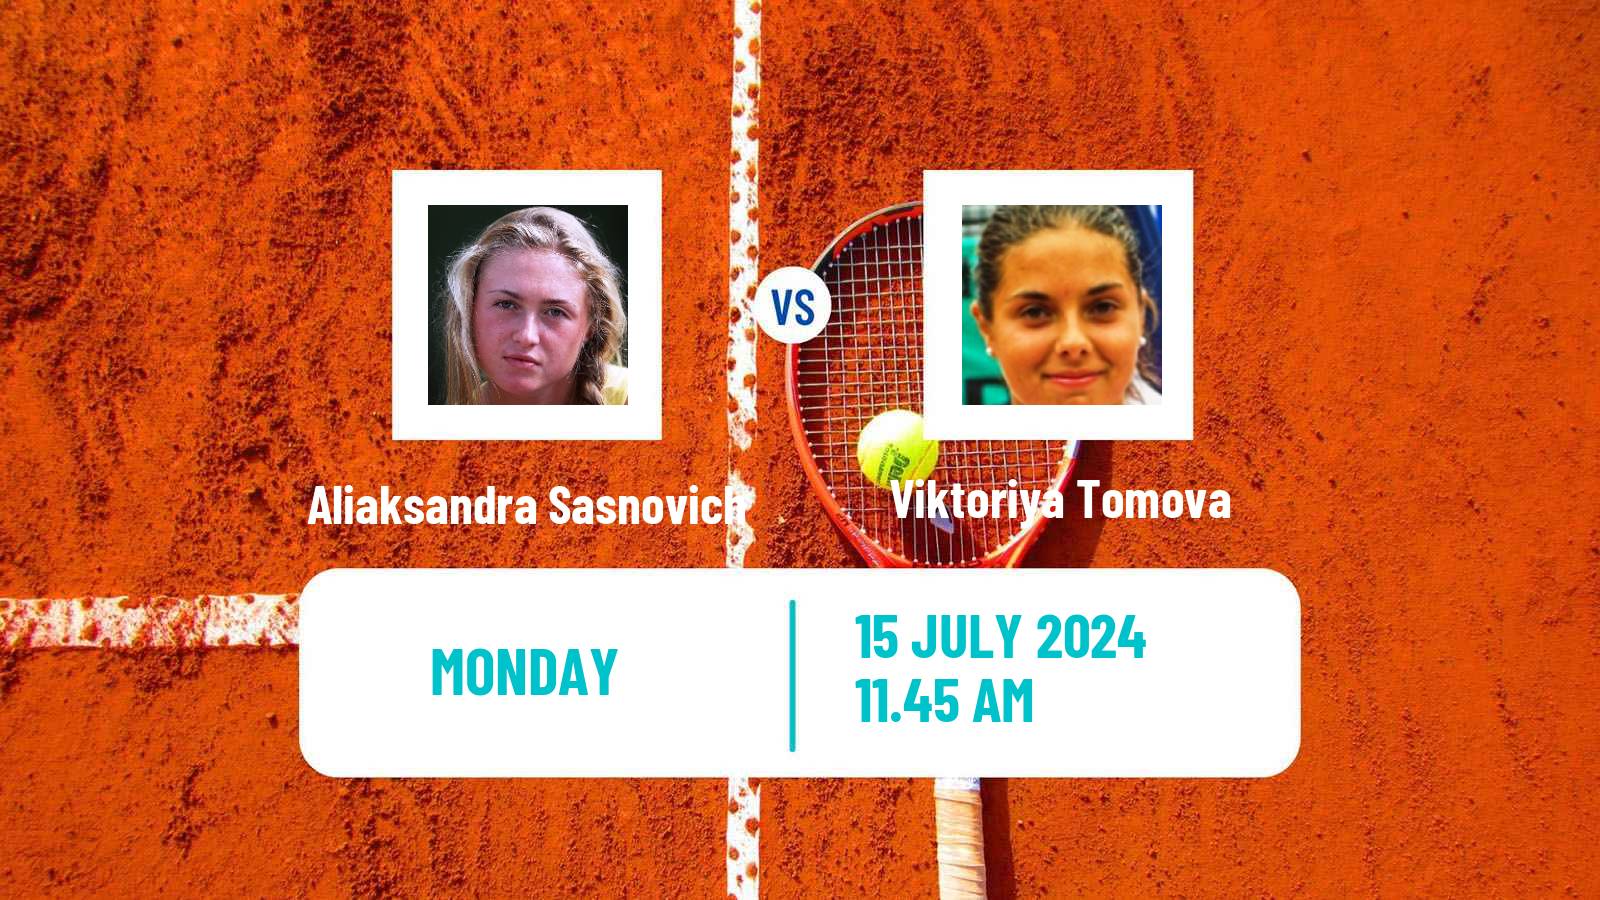 Tennis WTA Budapest Aliaksandra Sasnovich - Viktoriya Tomova